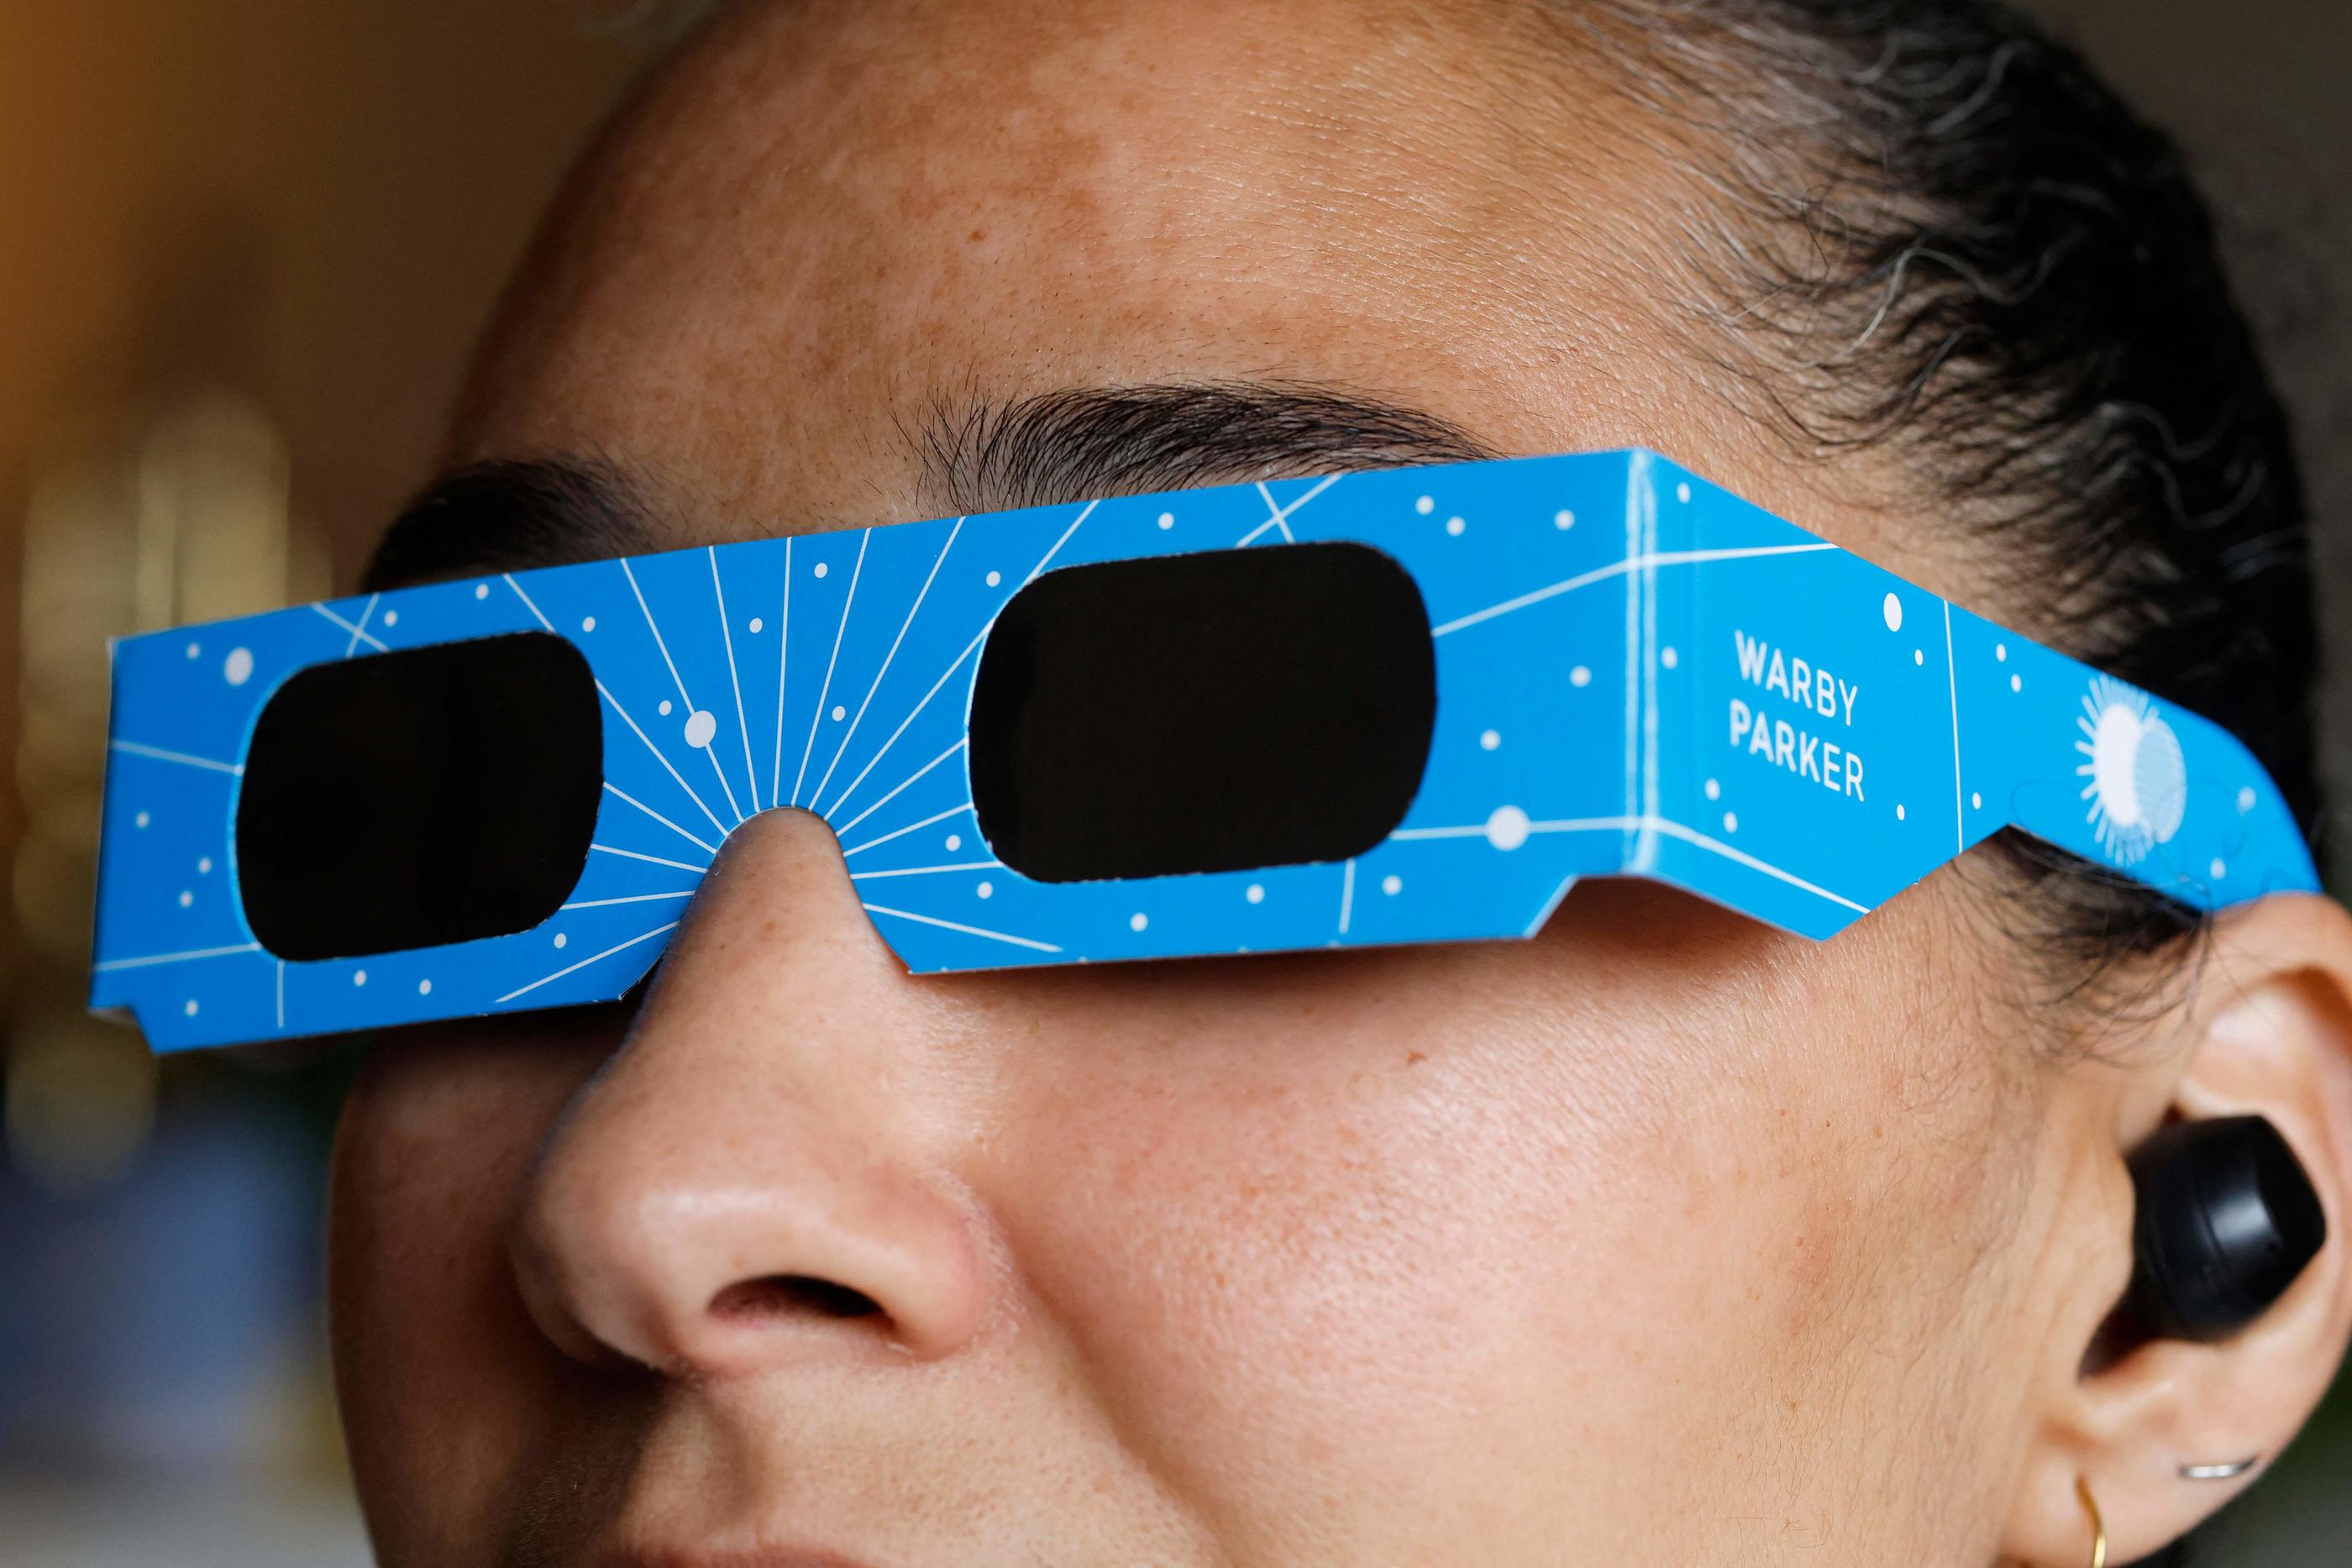 Le port de lunettes protectrices est indispensable pendant les phases partielles d'une éclipse solaire. Getty Images via AFP/ Michael M. Santiago